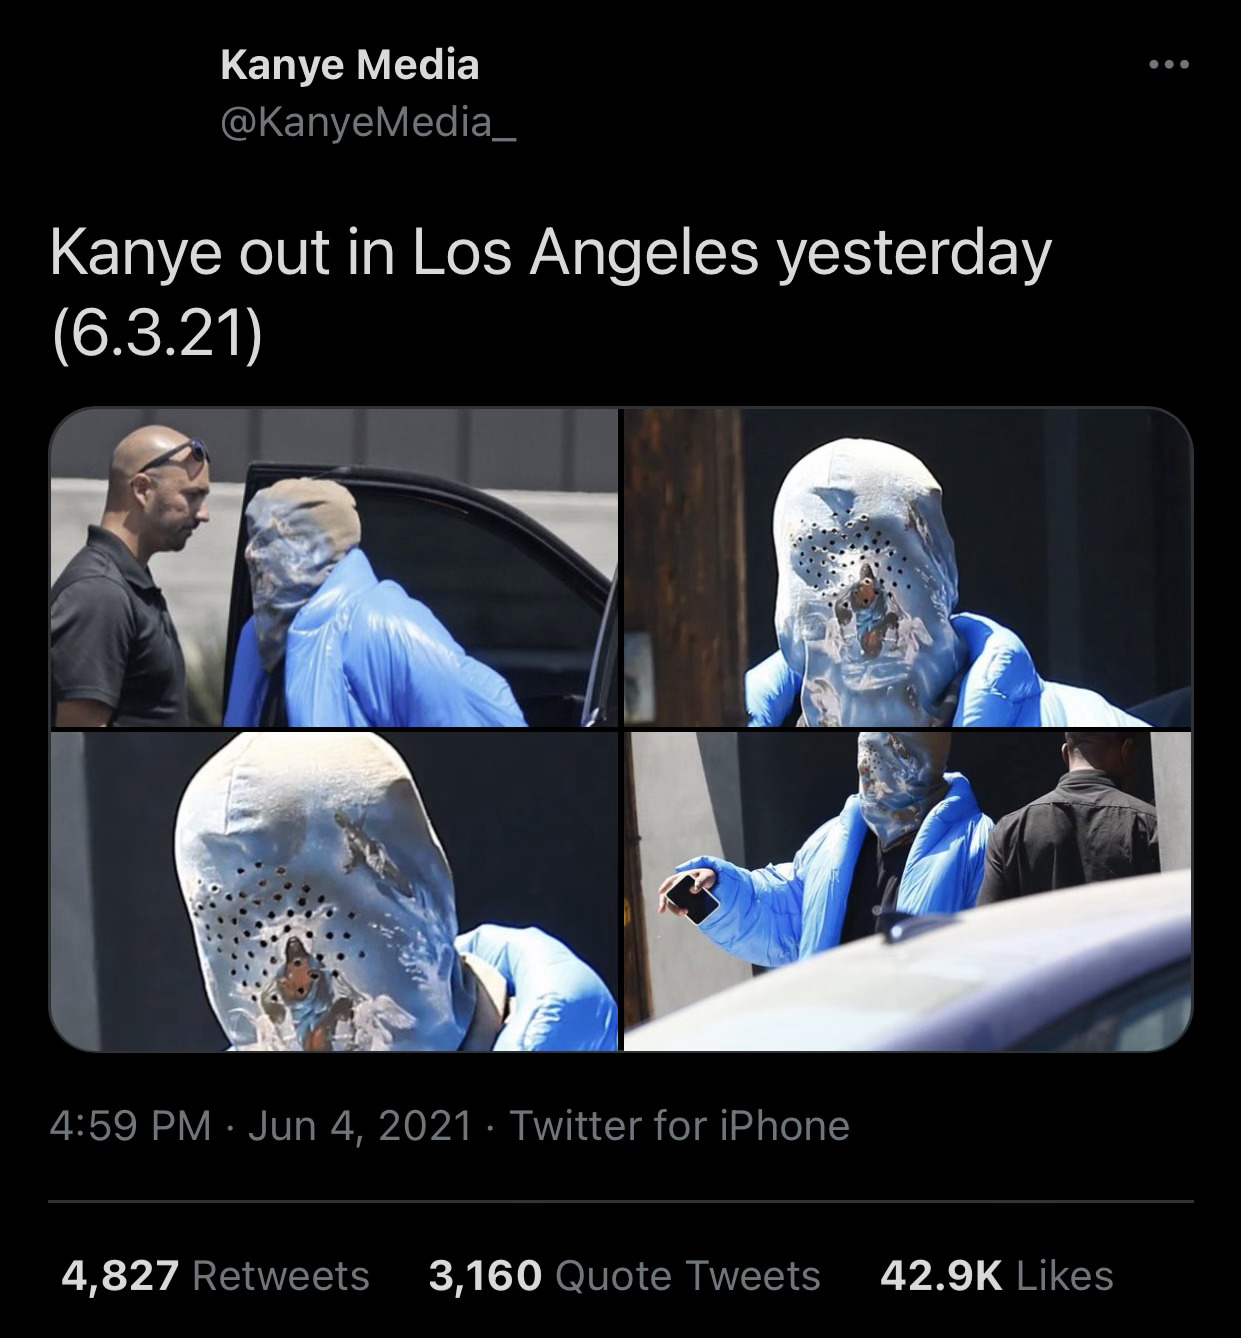  Courtesy of Kanye Media on Twitter